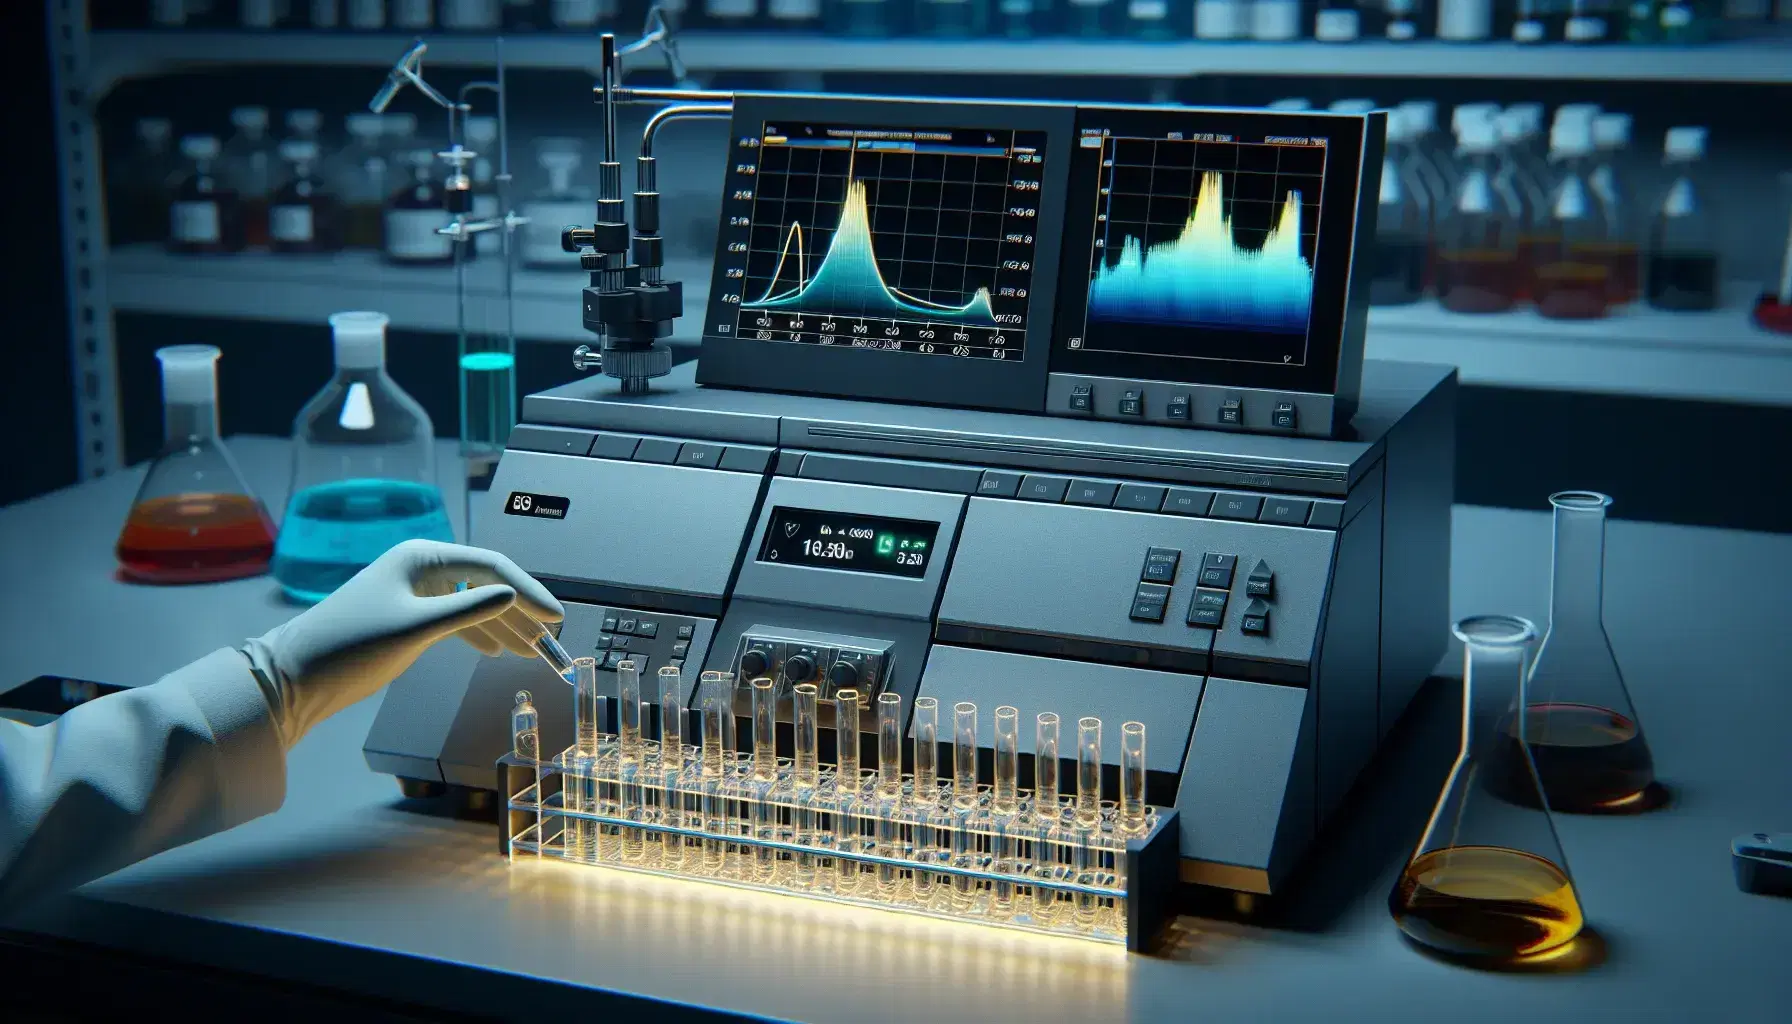 Espectrofotómetro de doble haz en funcionamiento en laboratorio con pantalla mostrando curva de absorción y cuvetas de cuarzo con líquidos de distintos tonos.